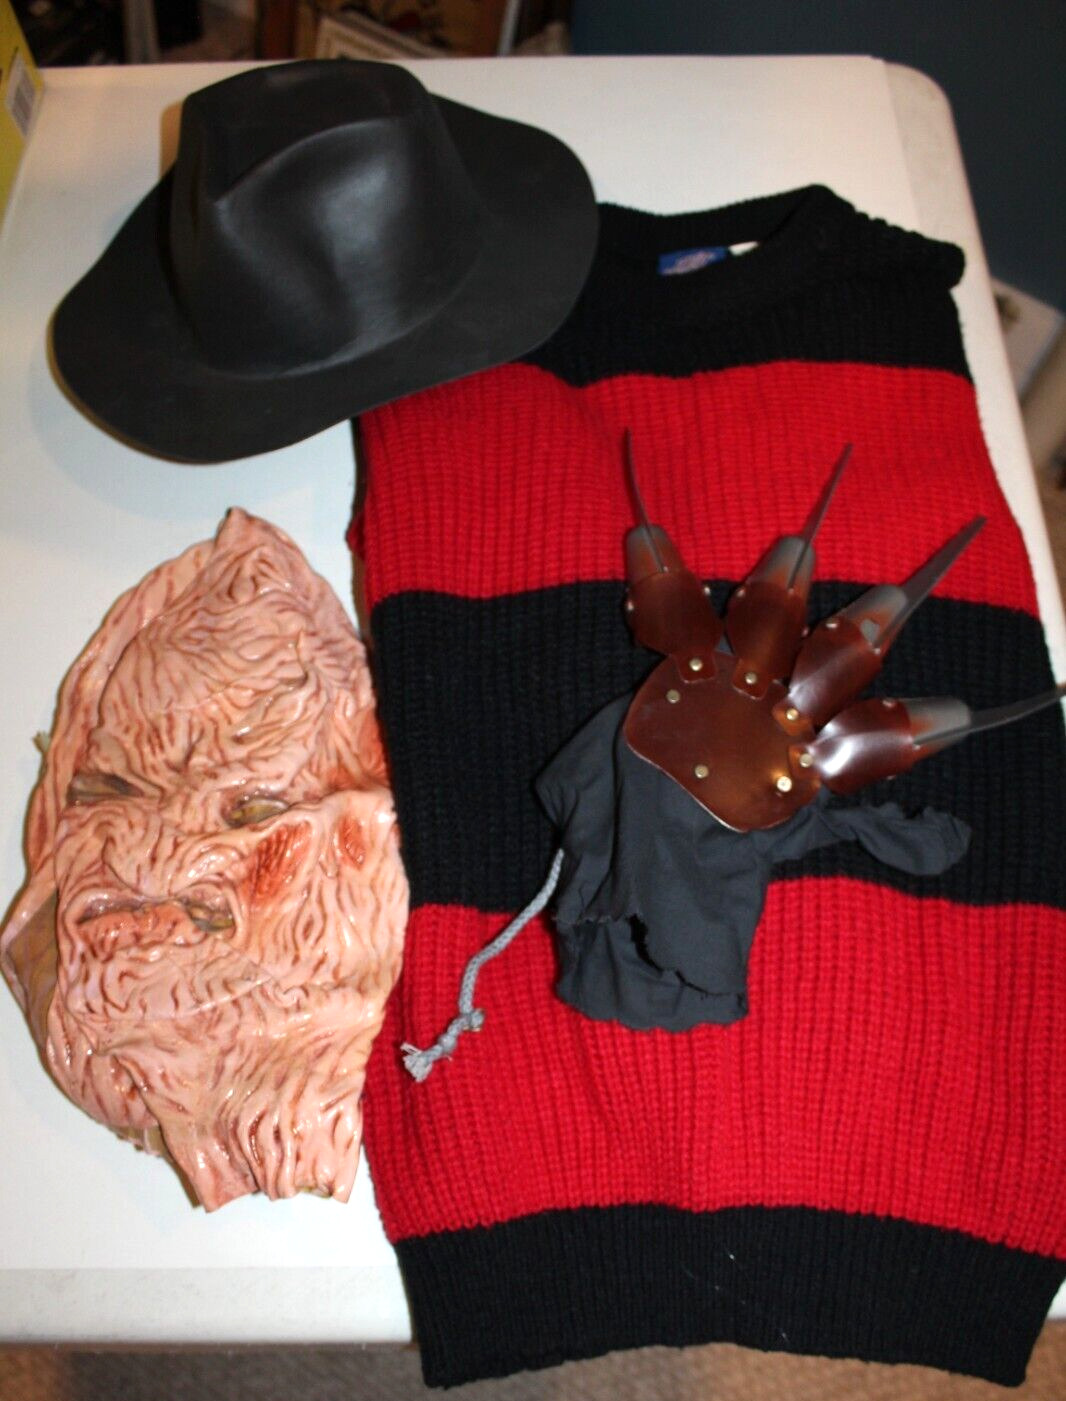 VTG Nightmare on Elm Street Freddy Krueger Sweater Glove Hat & Mask 1980s 90s